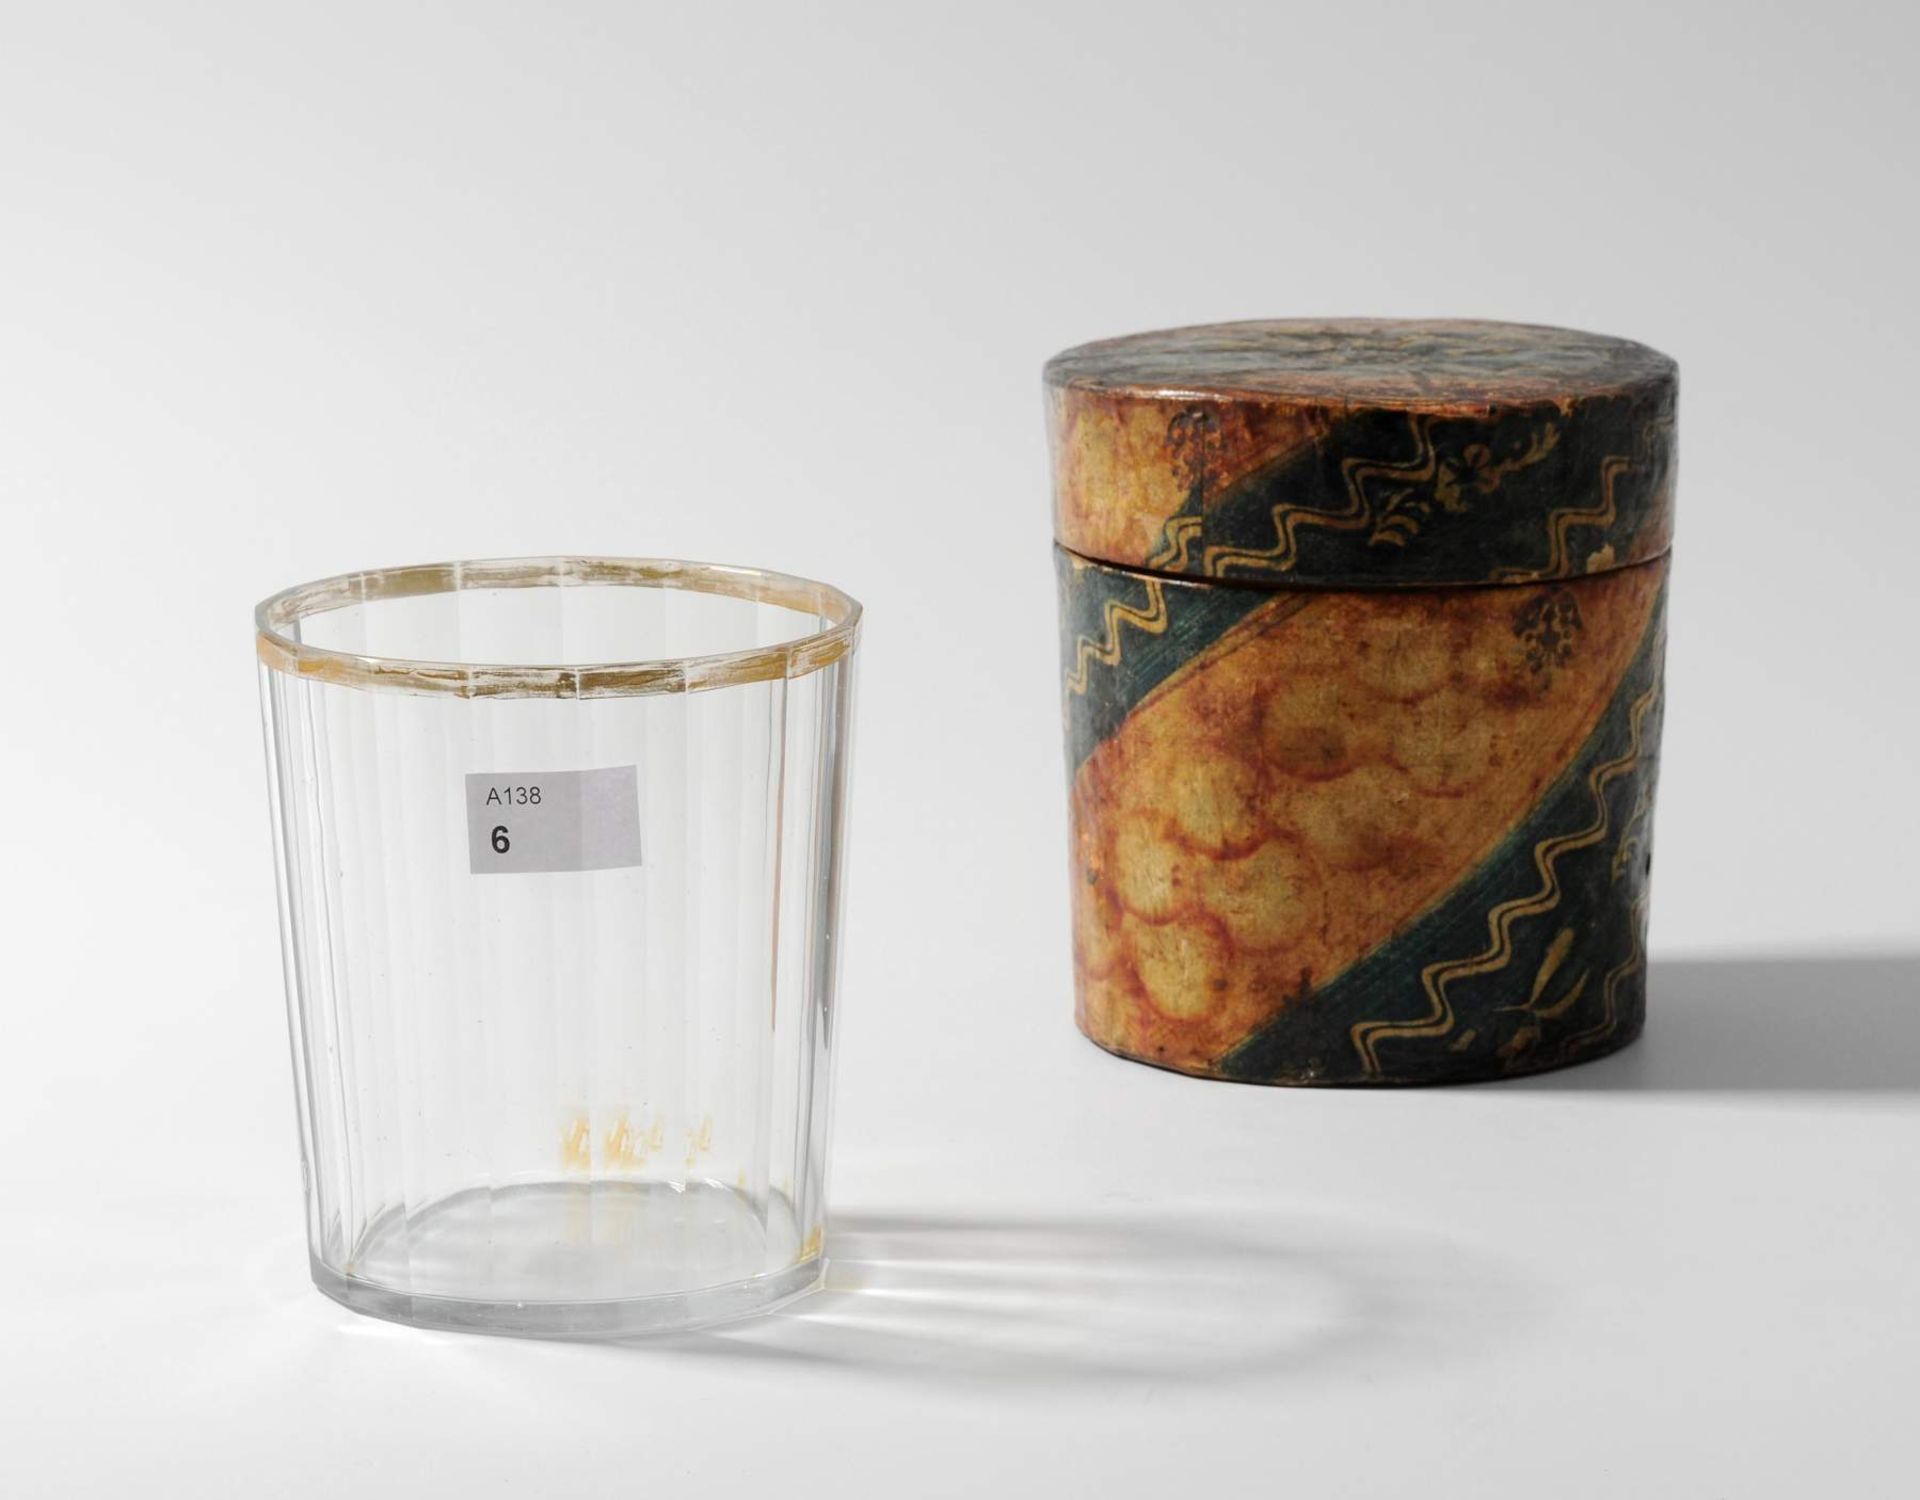 Becher mit Etui, um 1800
Farbloses Glas, facettiert geschliffen, Goldrand (berieben). Etui aus